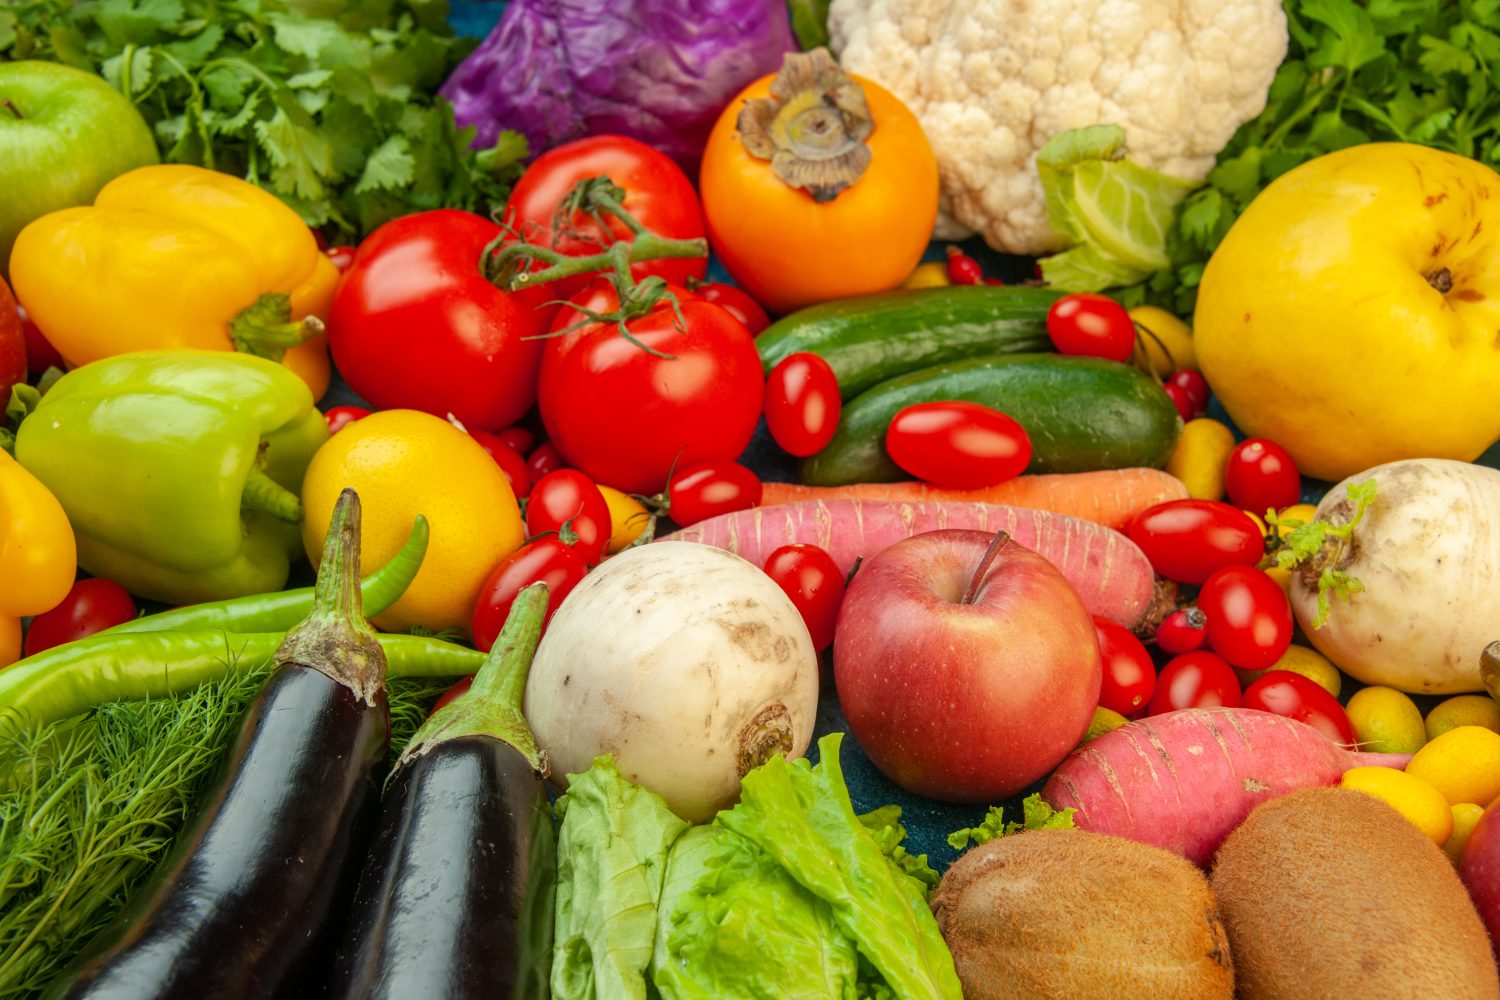 verduras crudas - Esta es la verdura más saludable según estudio